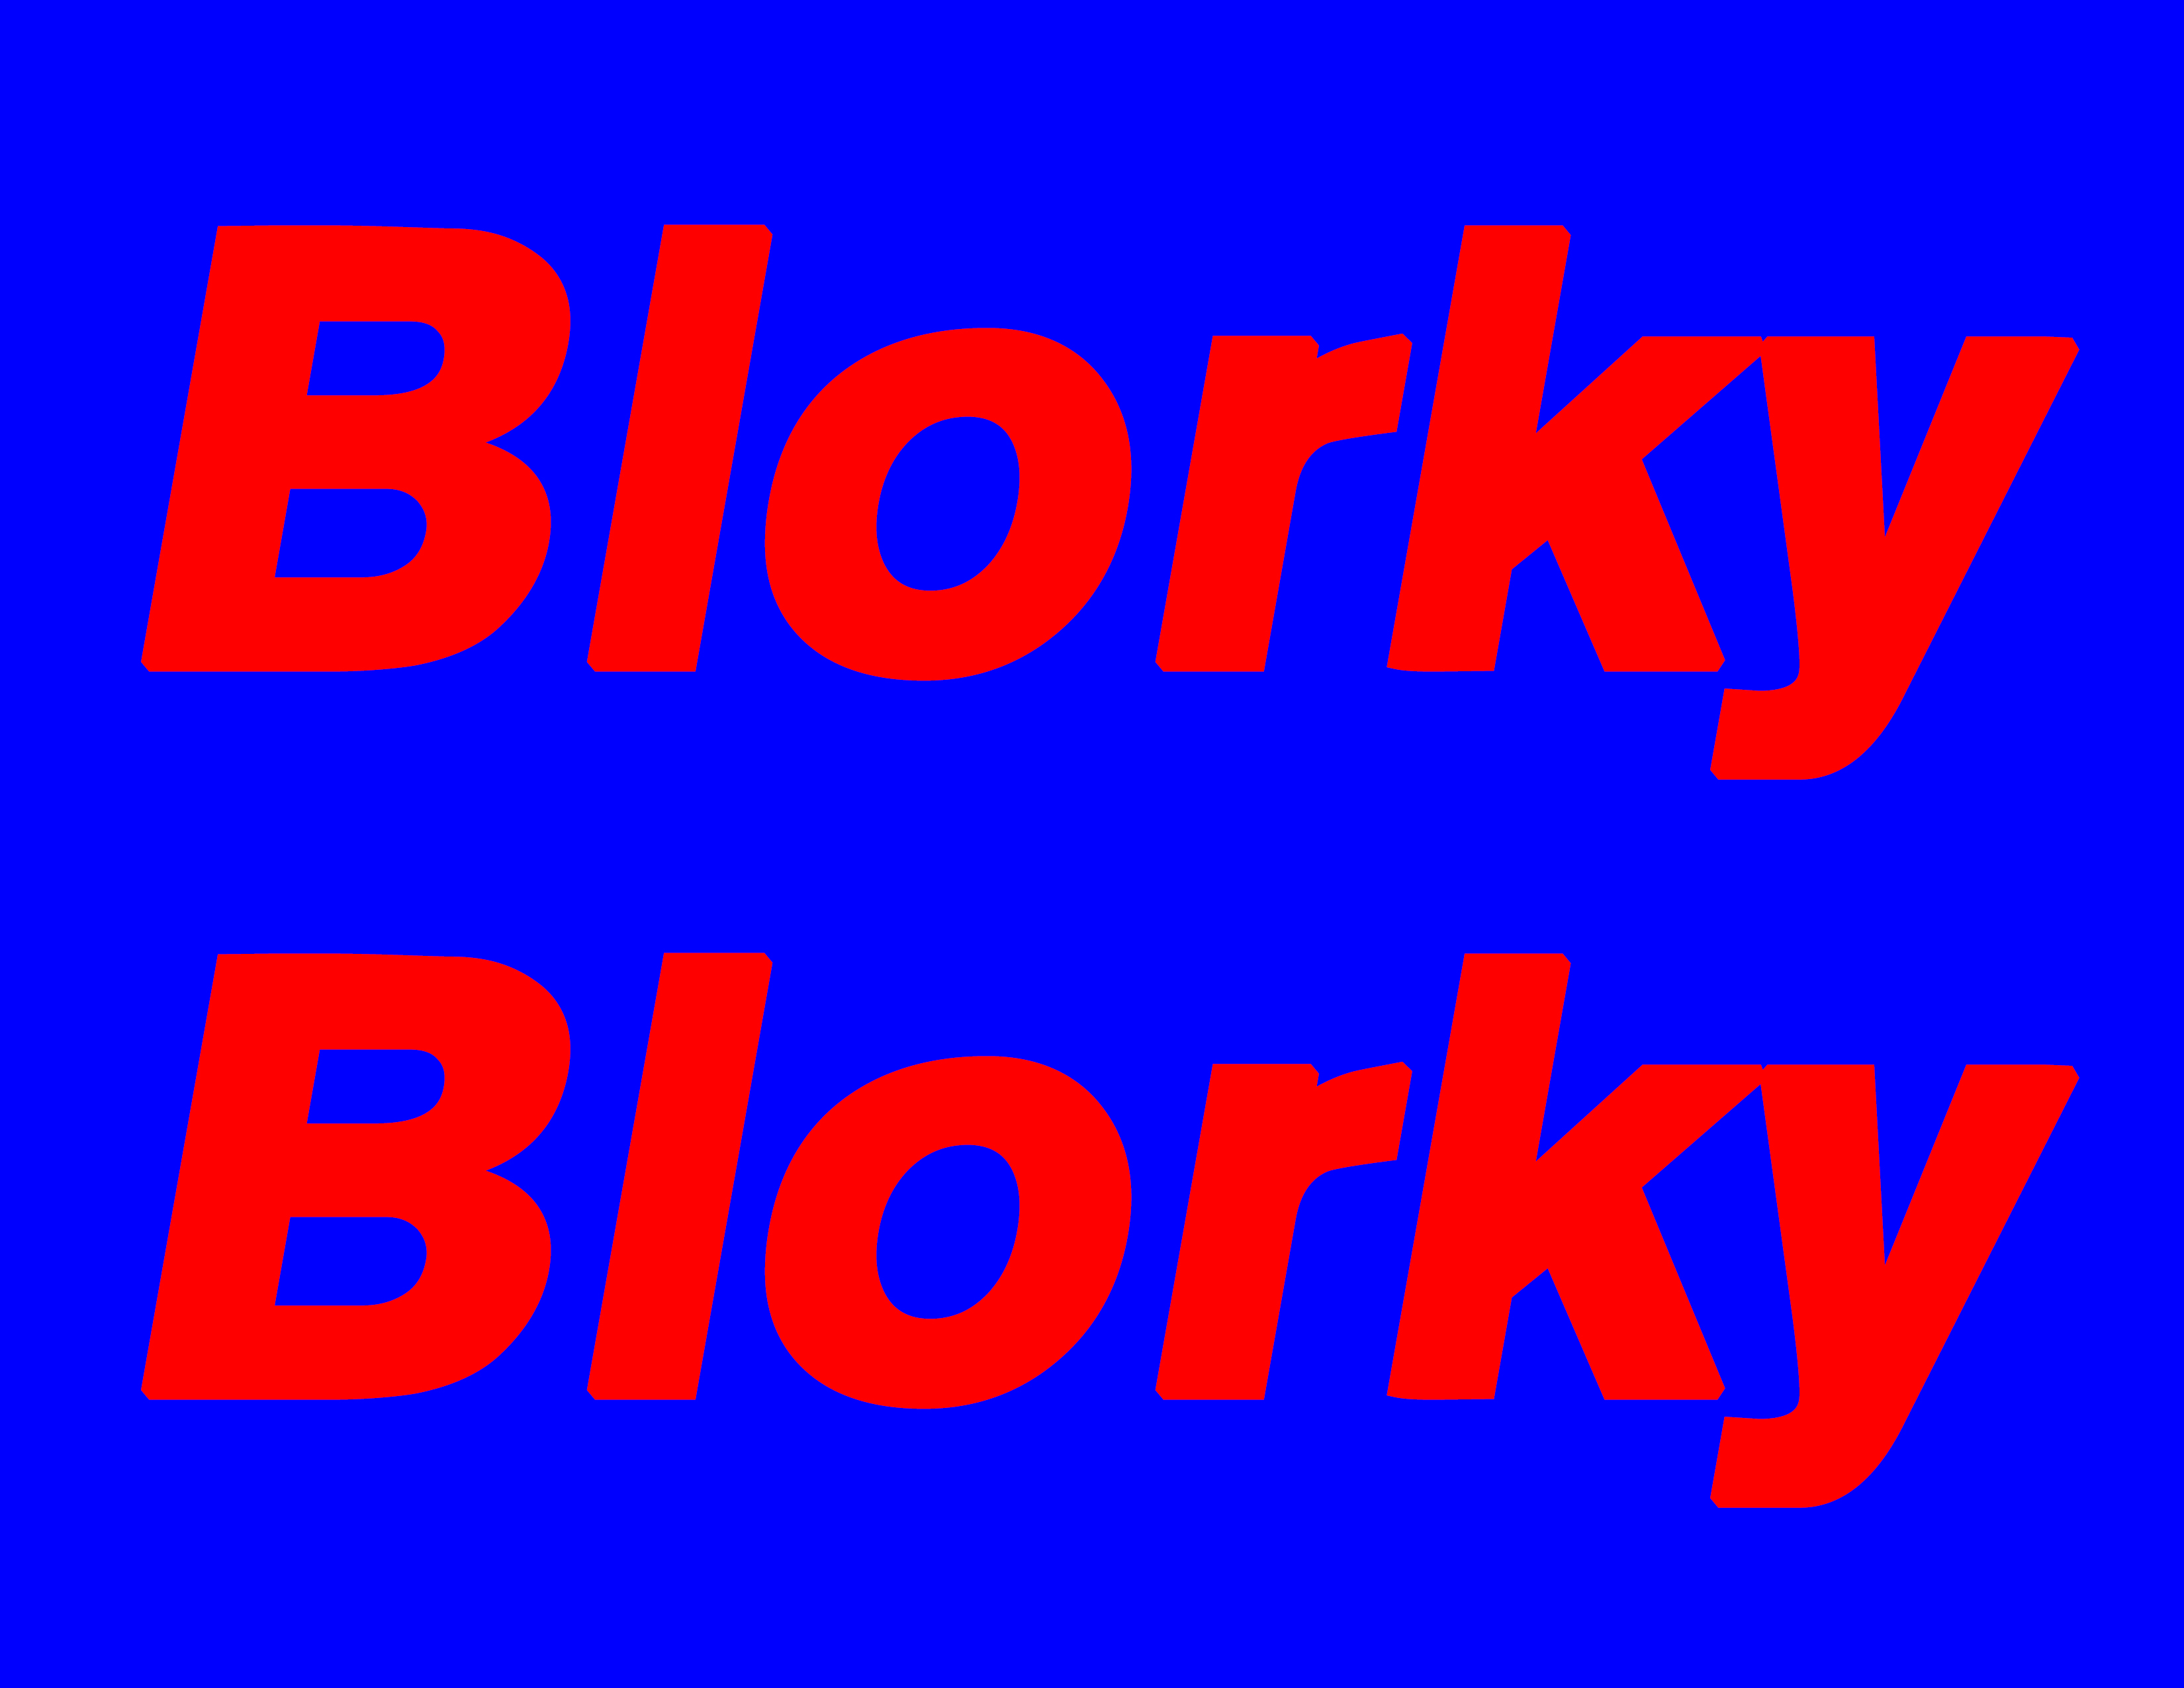 01-01 - Blorky Blorky - (2014,04,09)